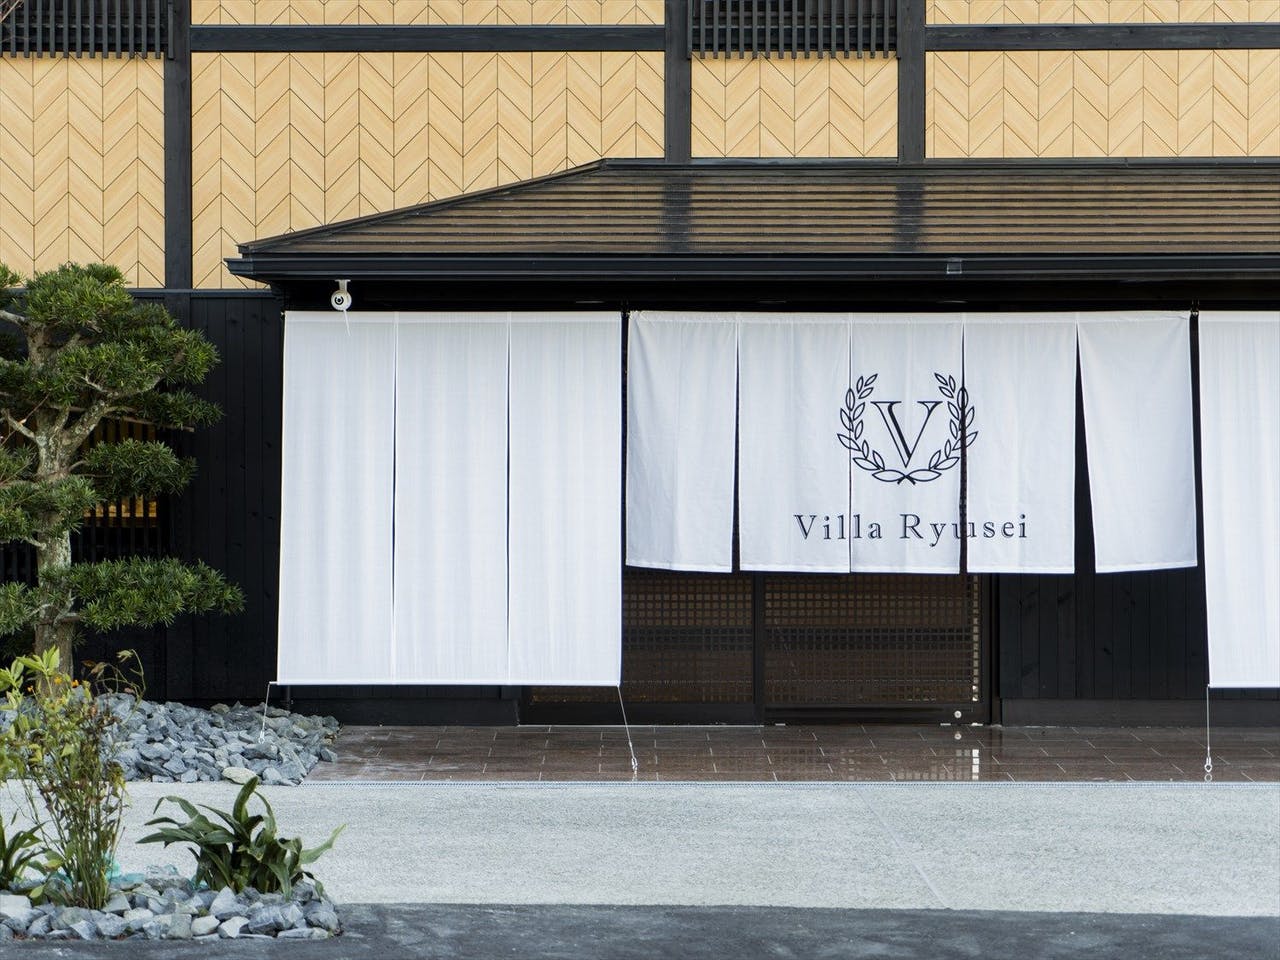 Villa Ryusei